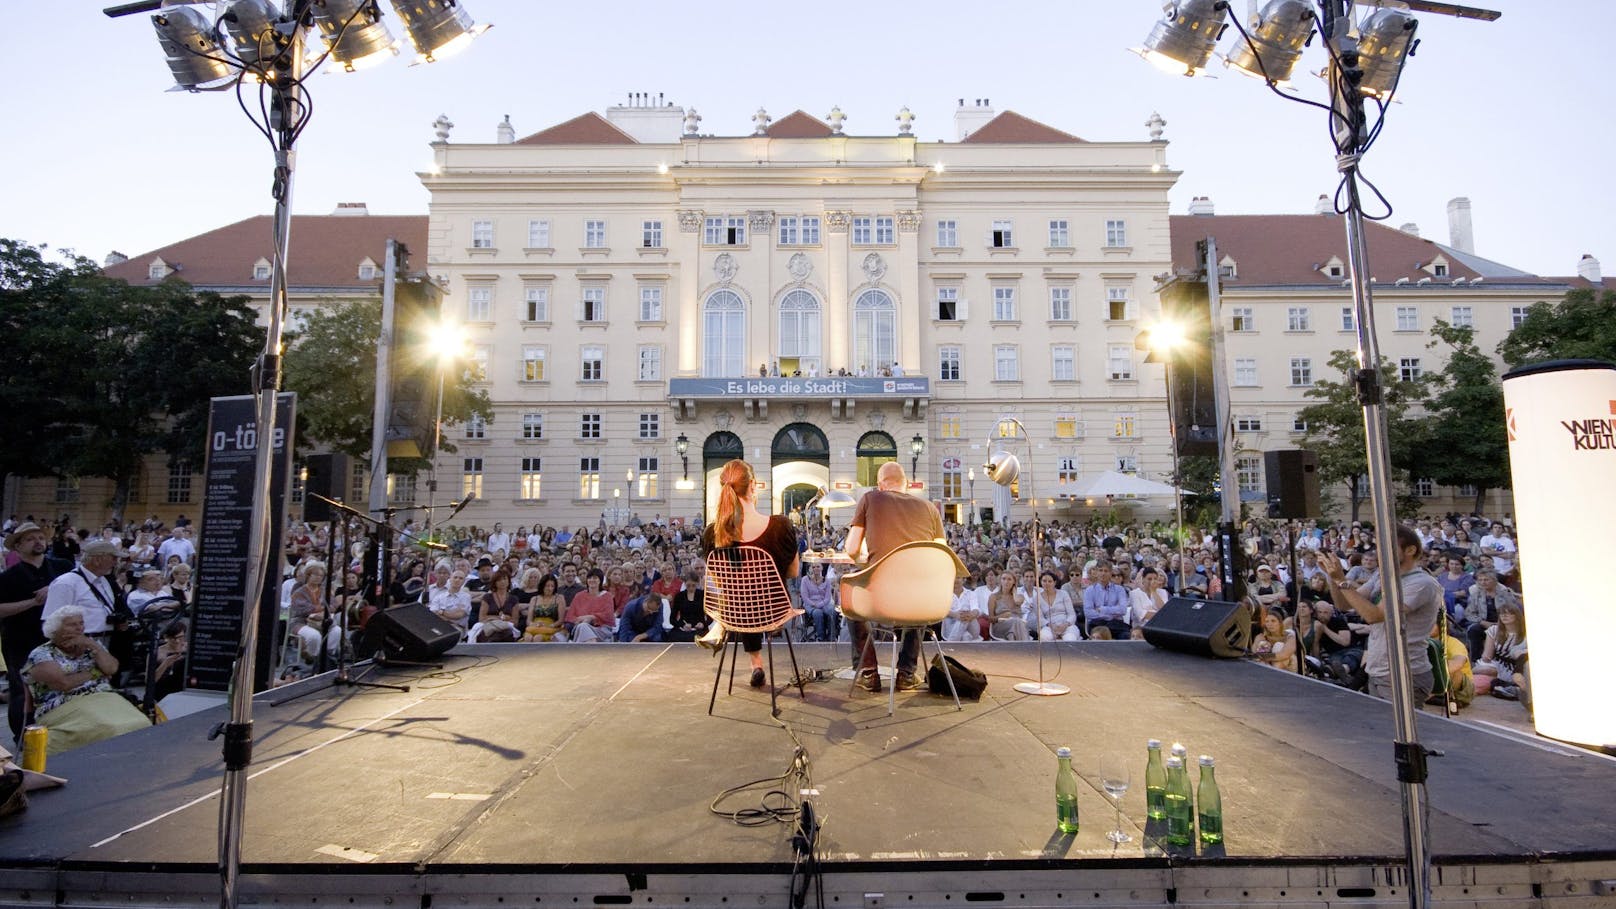 Gut mit Worten ist das Literaturfestival "O-Töne", das im Wiener MuseumQuartier veranstaltet wird.